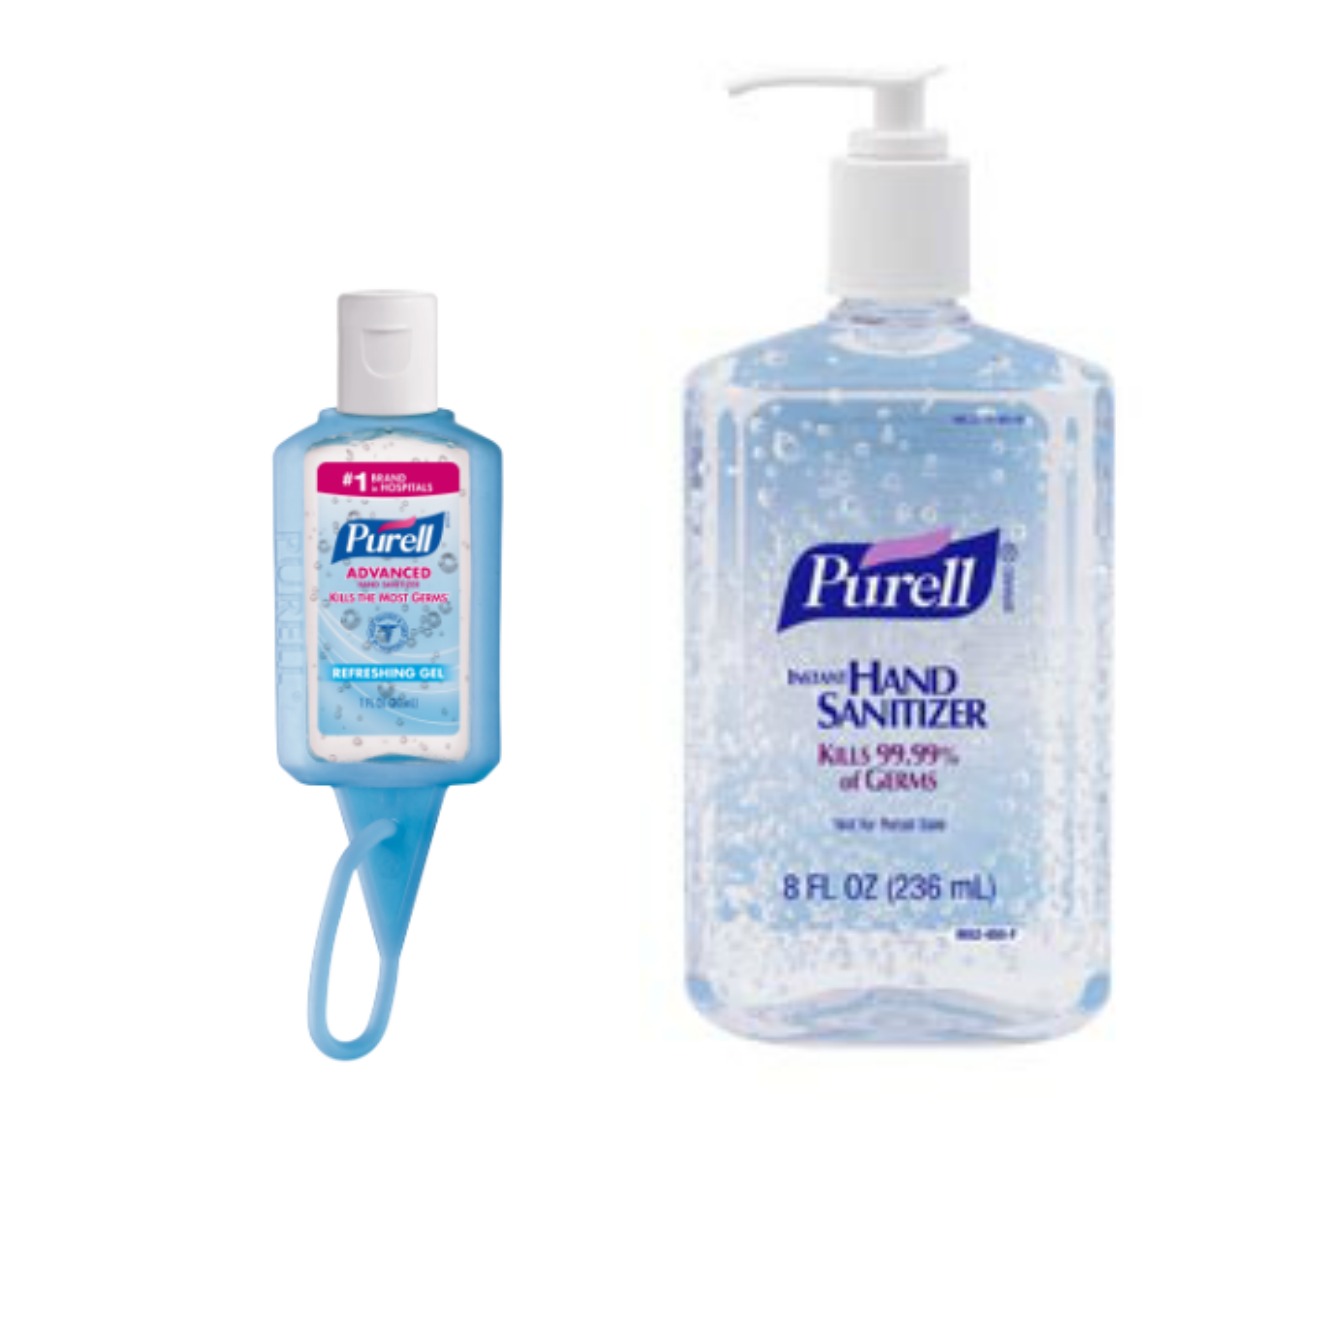 purell-hand-sanitizer-just-25-at-harris-teeter-the-harris-teeter-deals